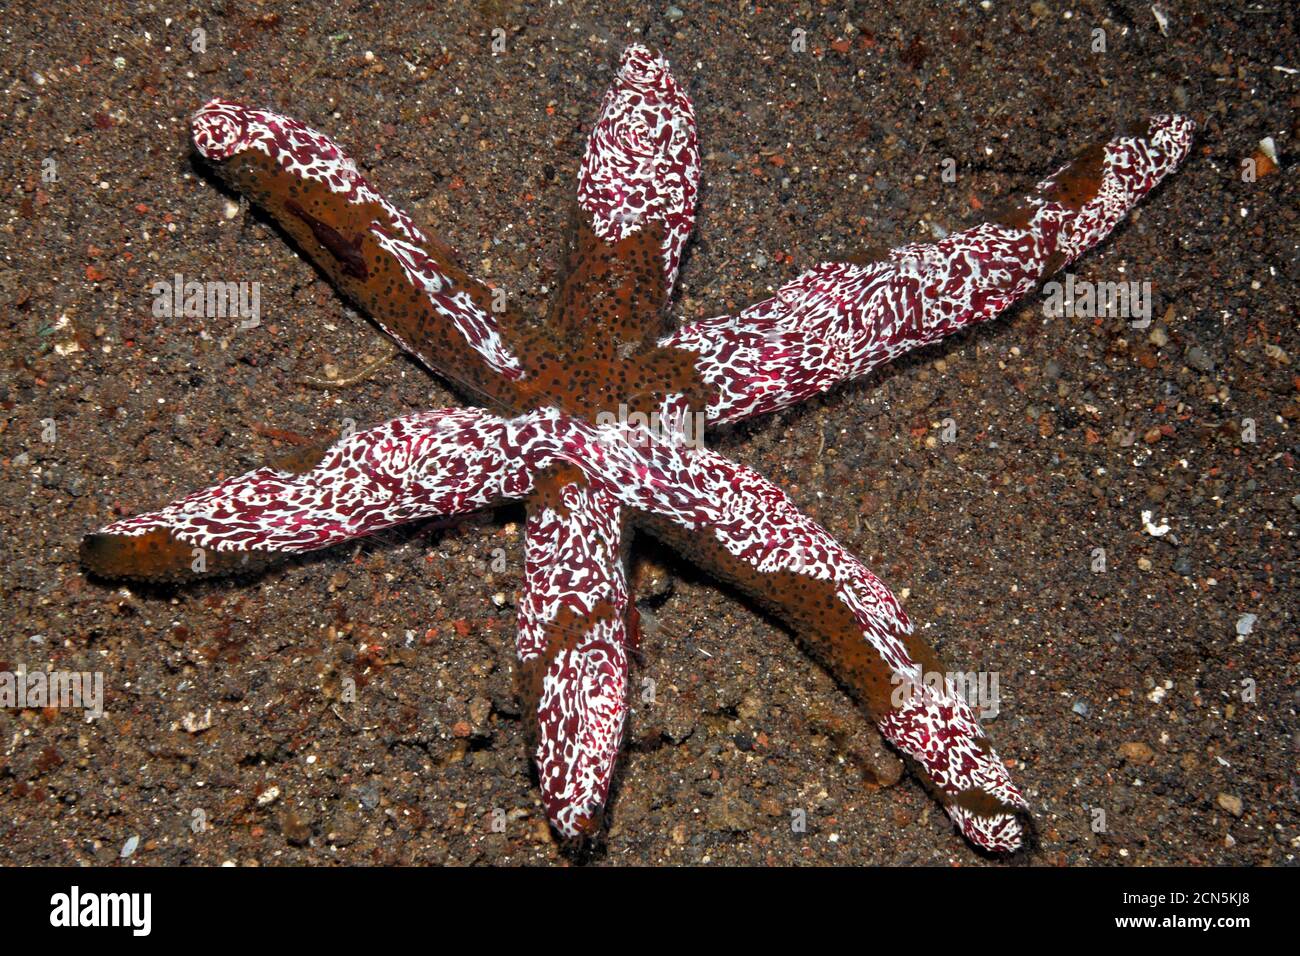 Ctenophore, o gelatine comb, Coeloplana astericola, che vive su una stella del mare, Echinaster luzonicus. Tulamben, Bali, Indonesia. Foto Stock